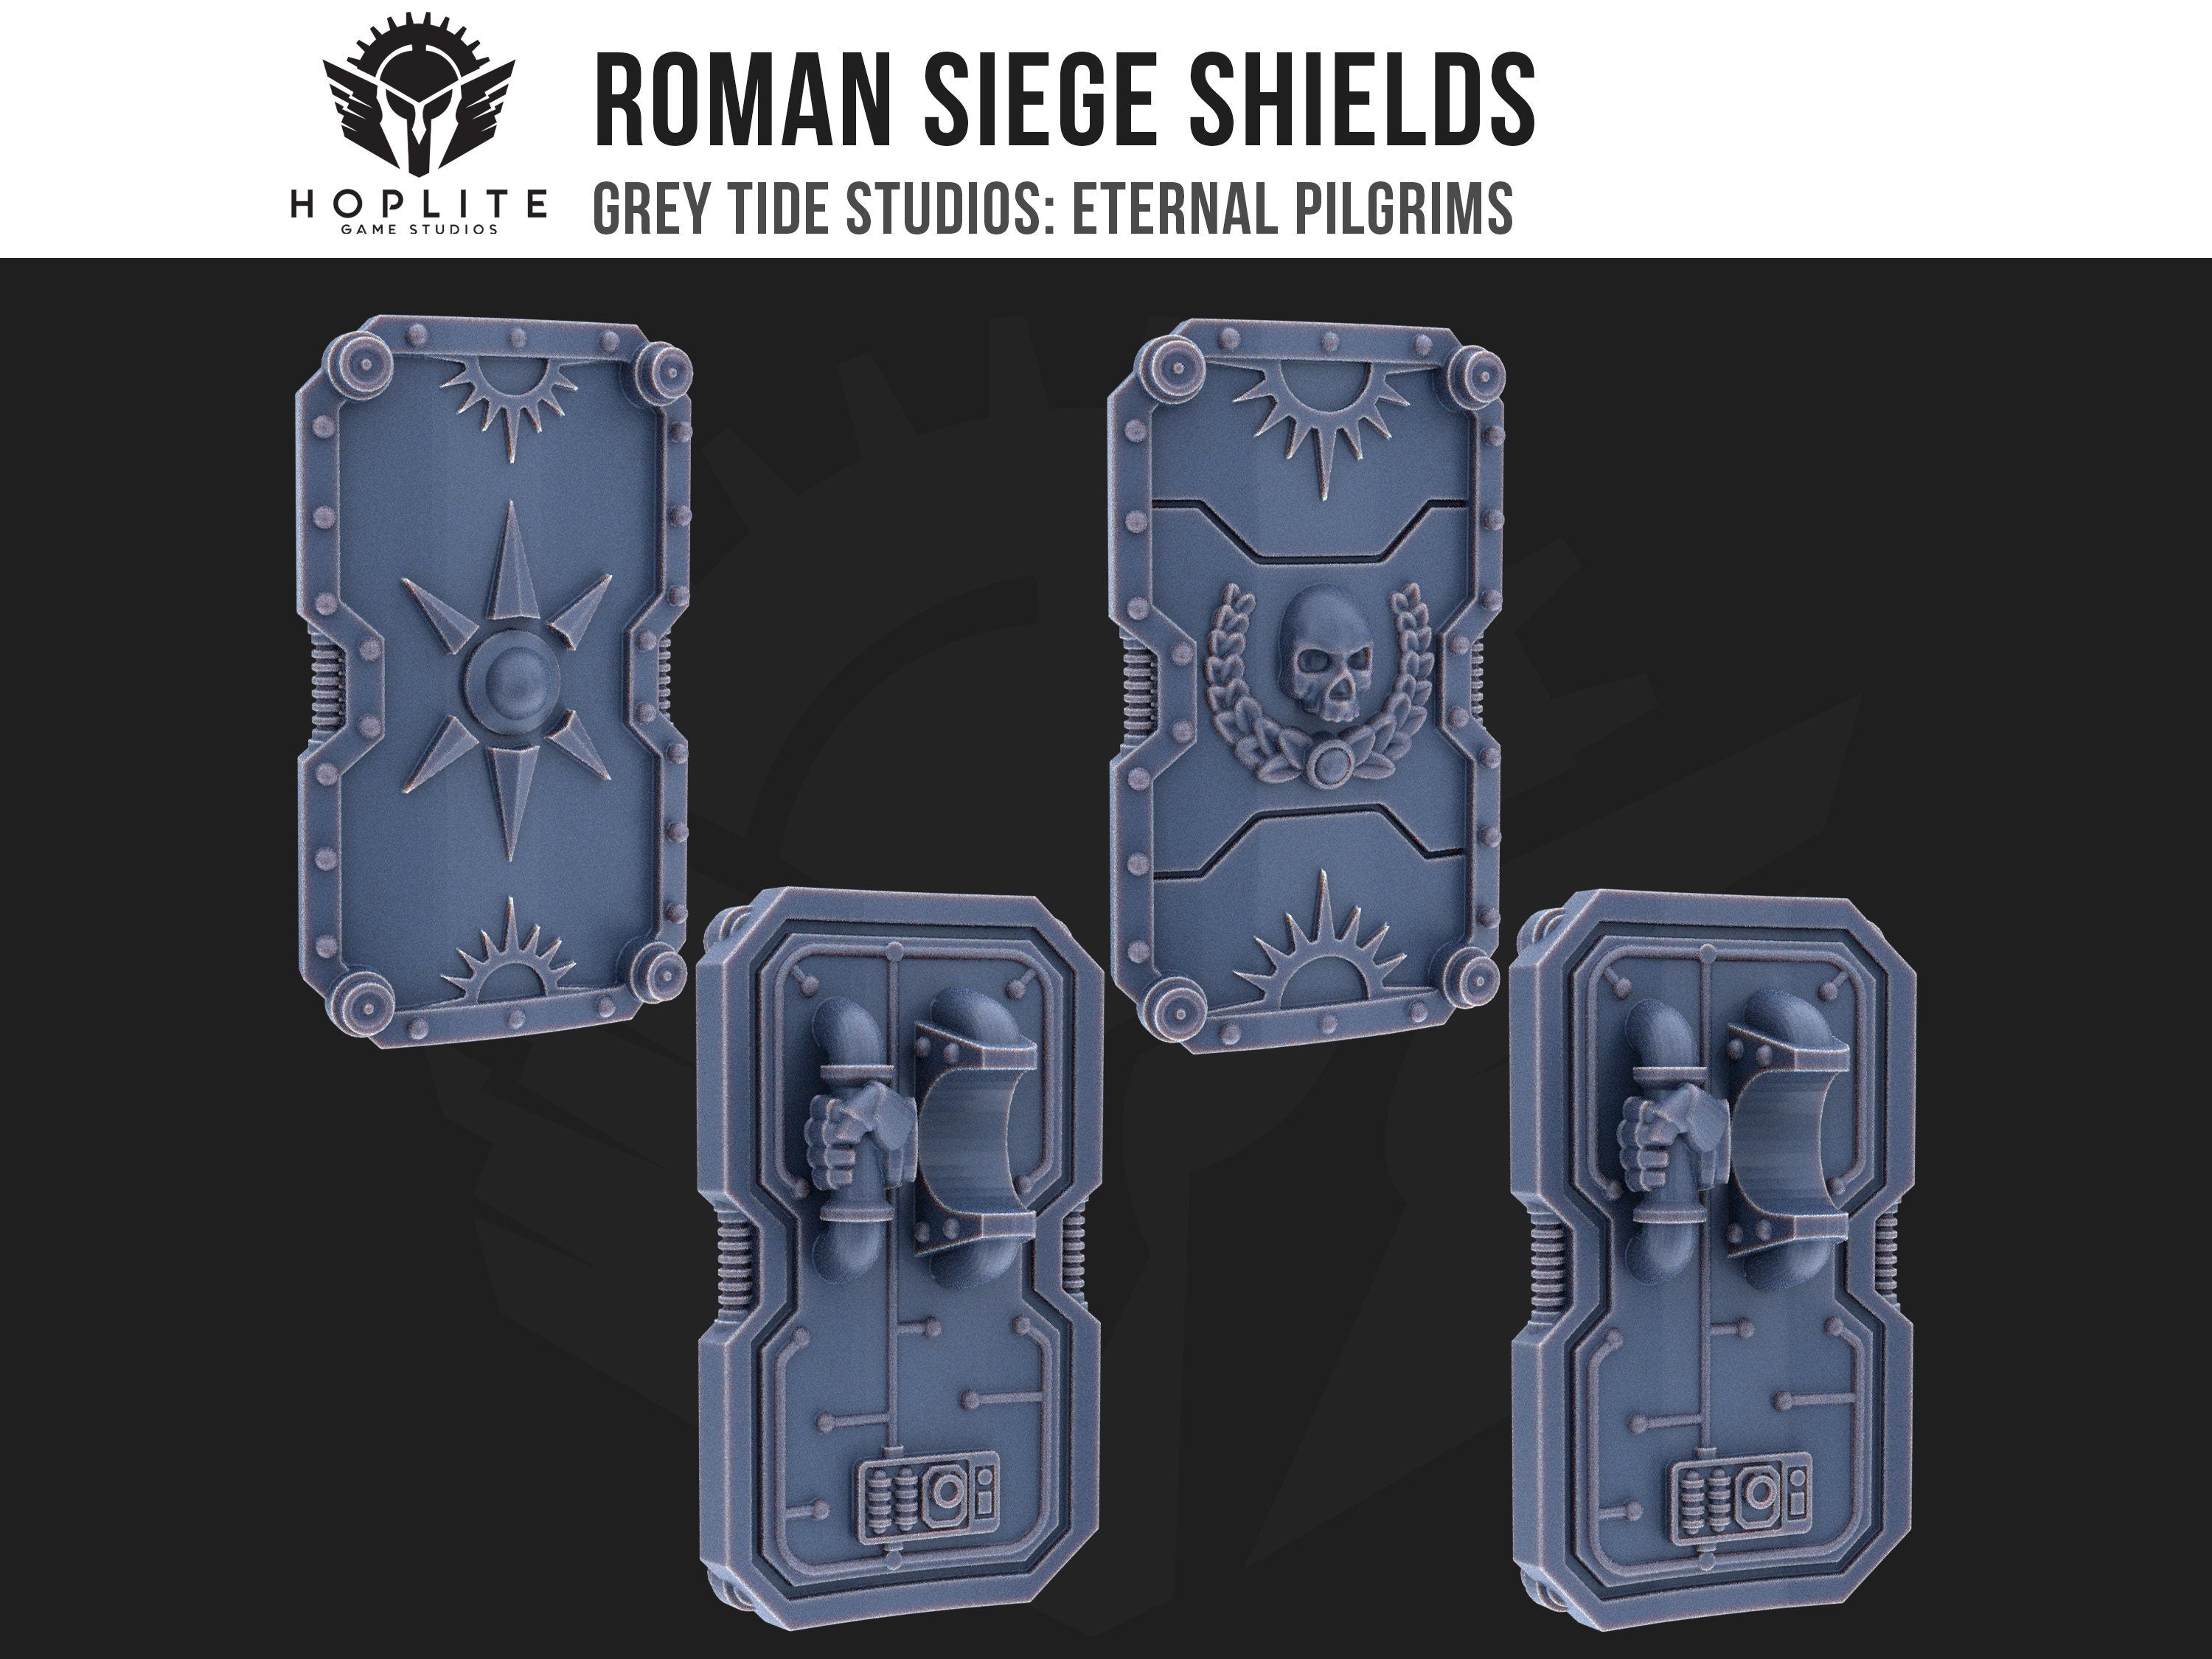 Escudos de asedio romanos (x10) | Estudios de marea gris | Peregrinos eternos | Piezas y brocas de conversión